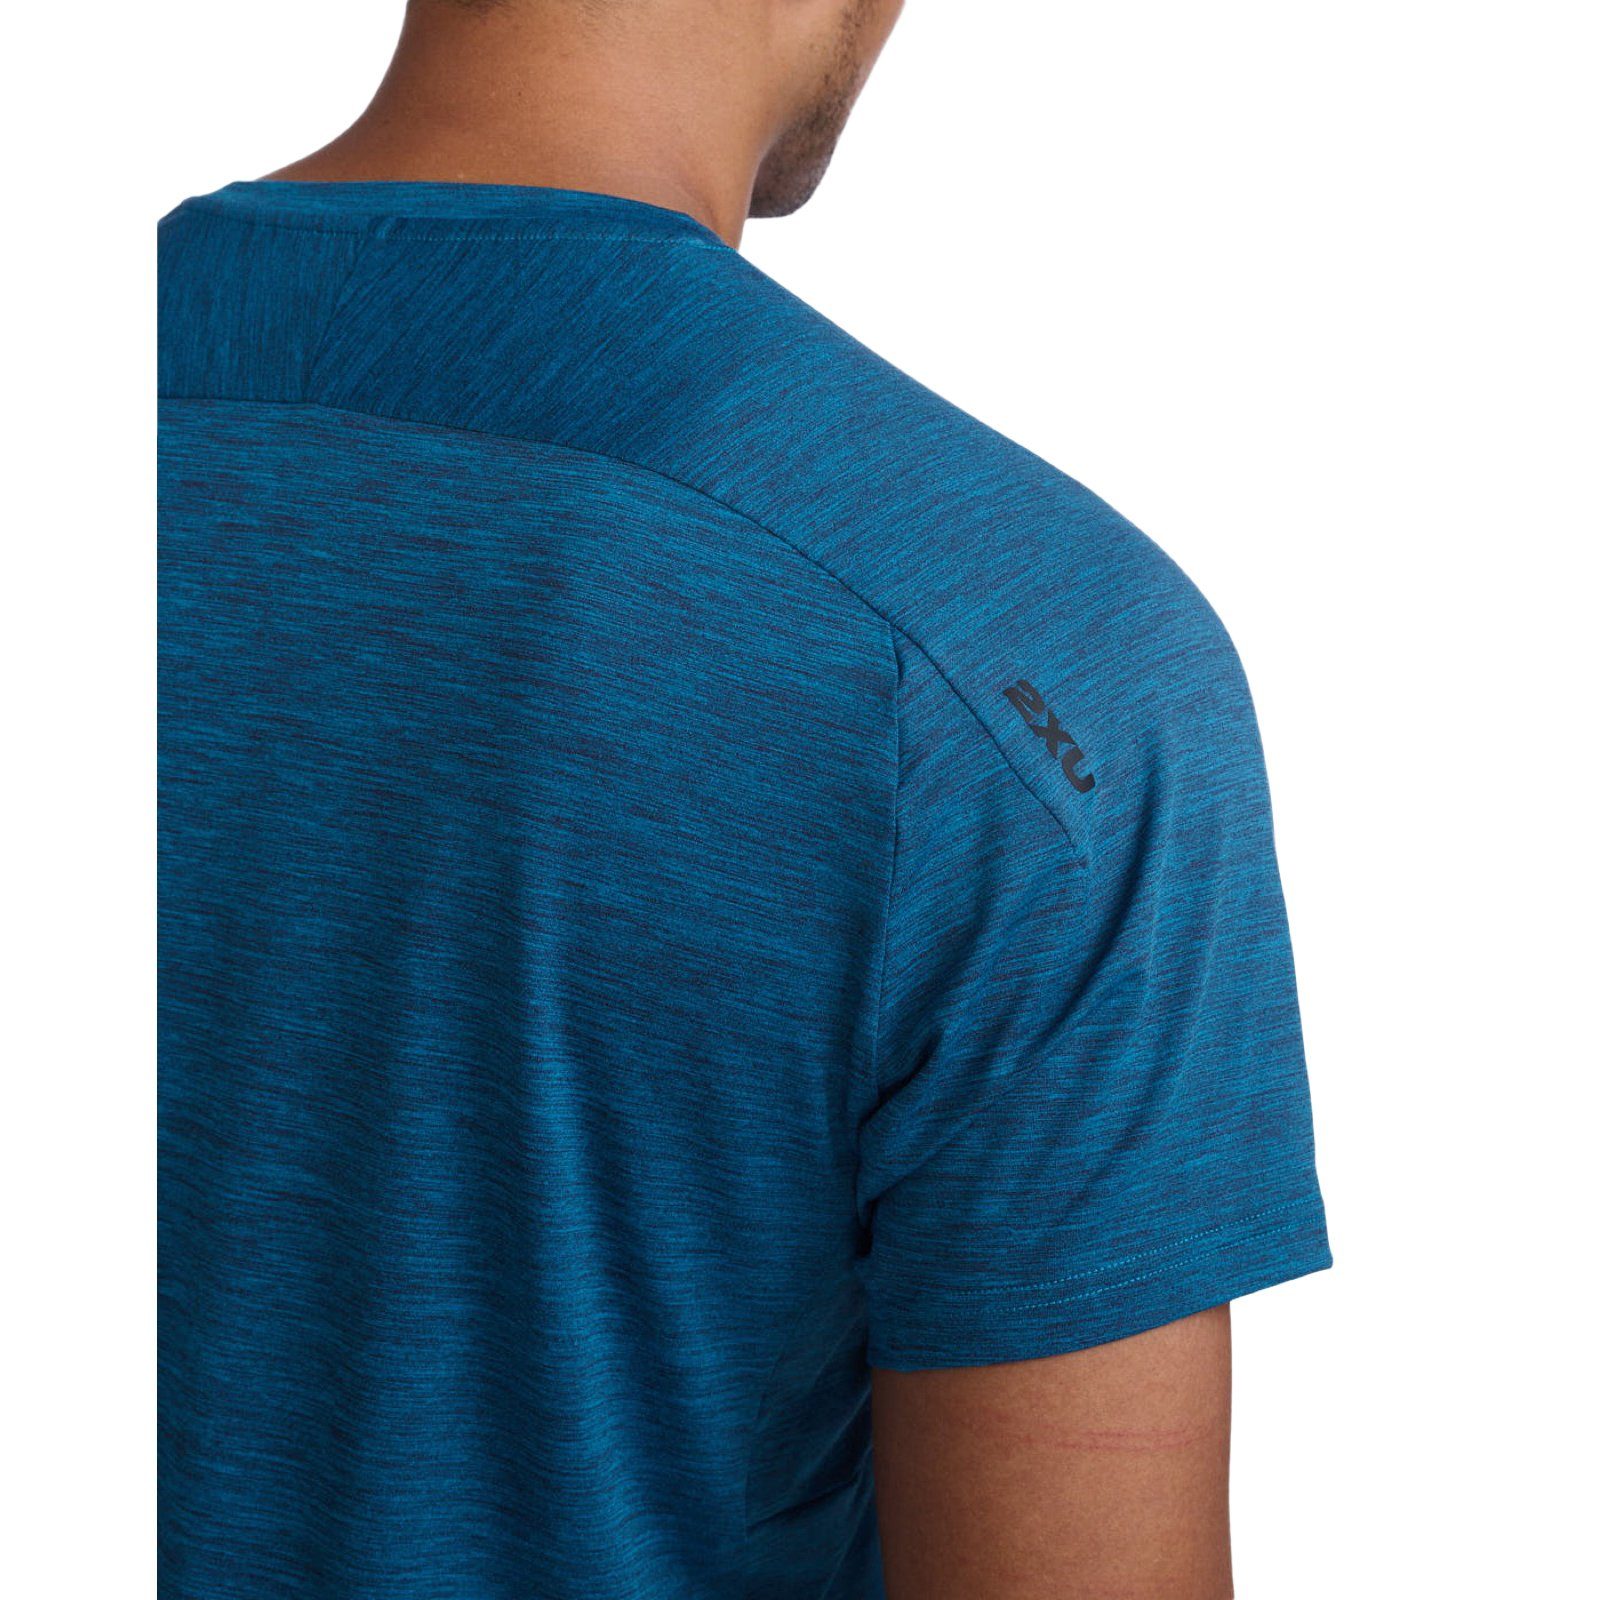 Celestial/Black Laufshirt Trainingsshirt Motion und Material strapazierfähiges Tee 2xU Bewegungsfreiheit